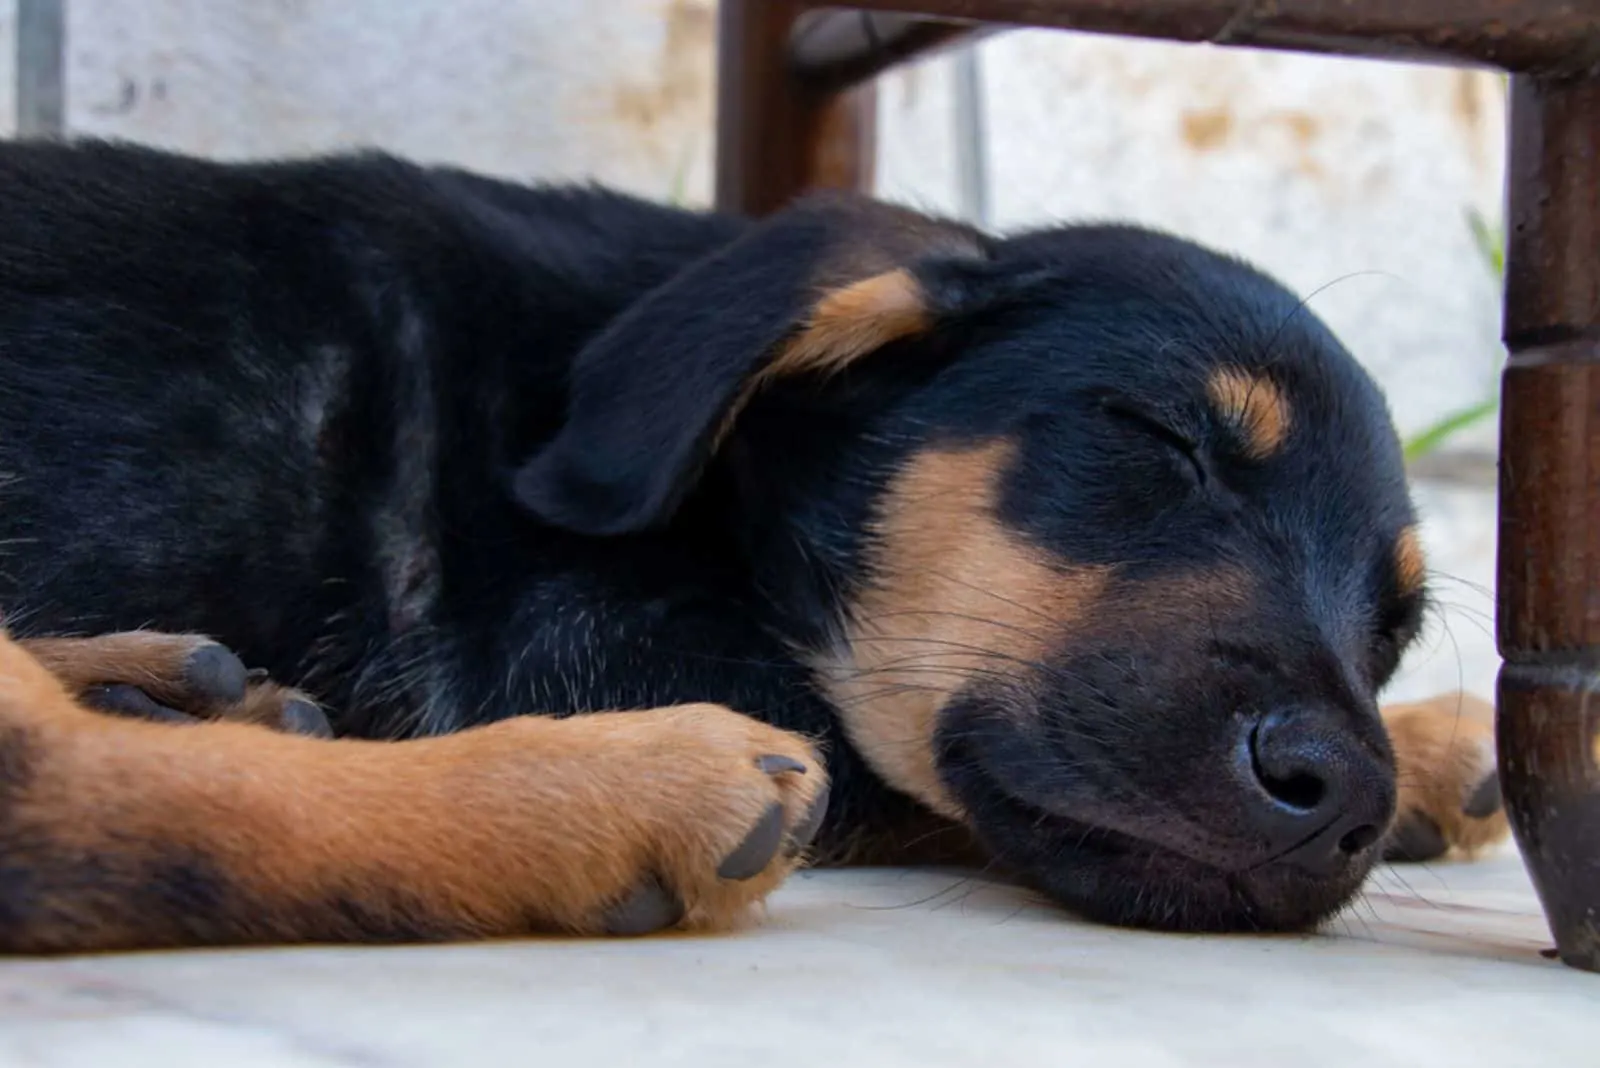 German shepherd puppy is sleeping